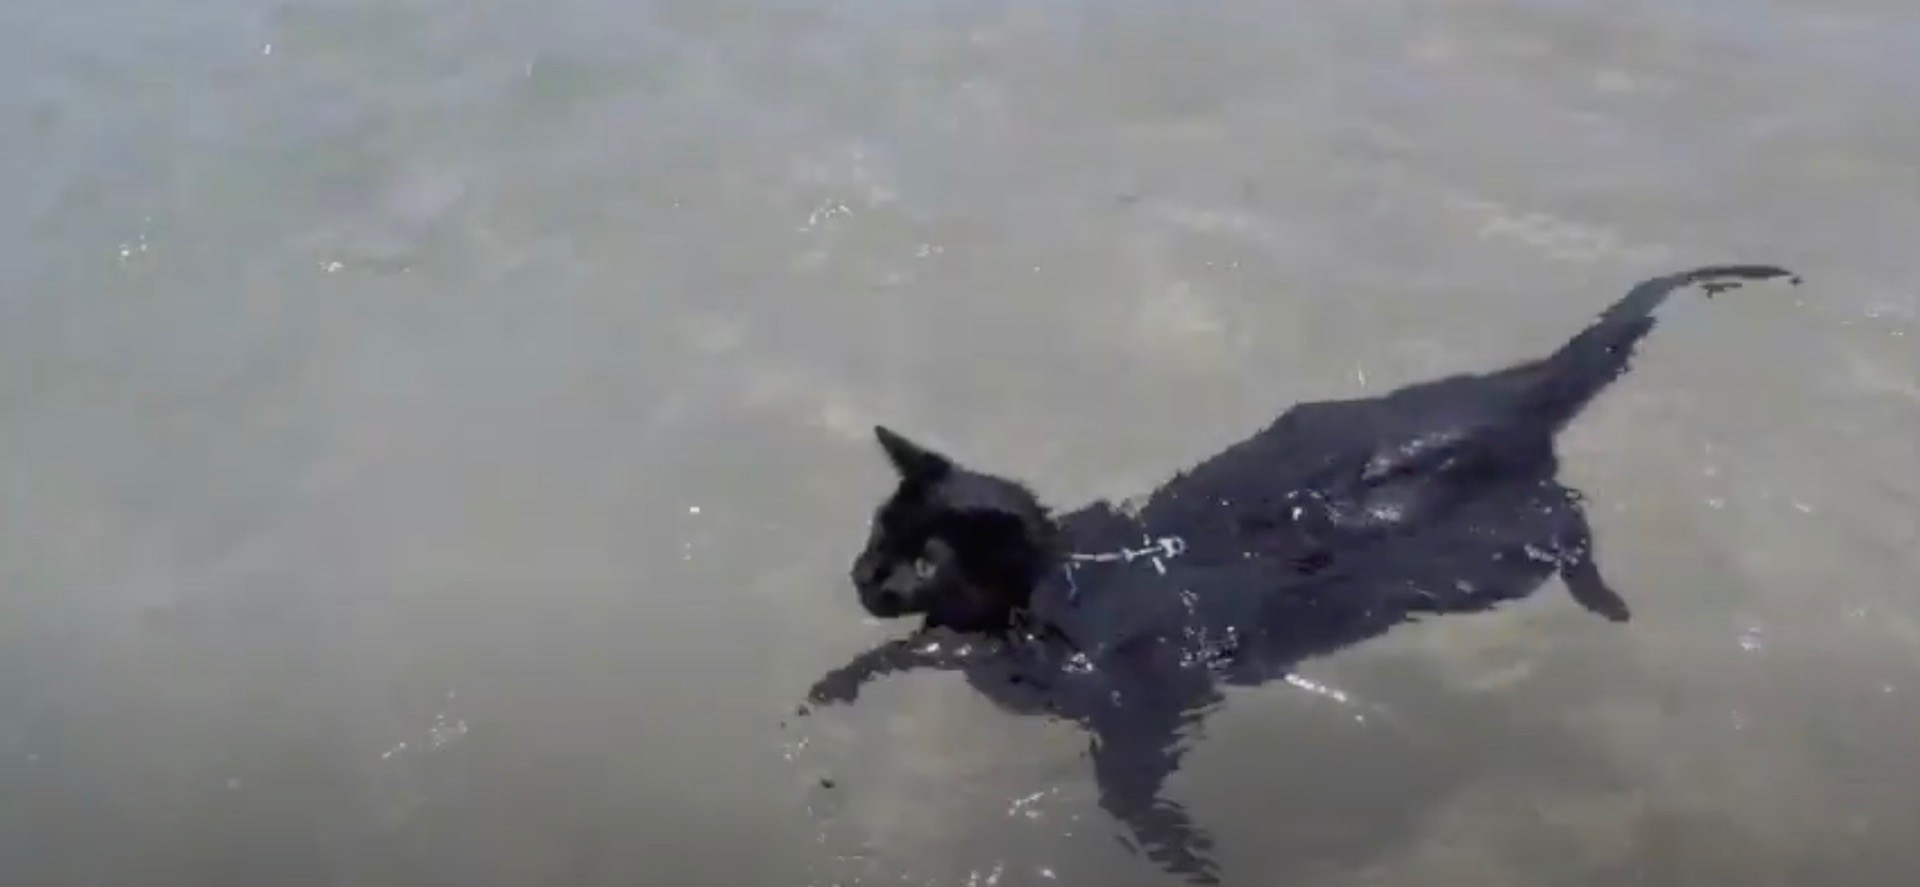 ぷかぷかと黒猫泳ぐよ海の中、波に揺られて自由気ままに